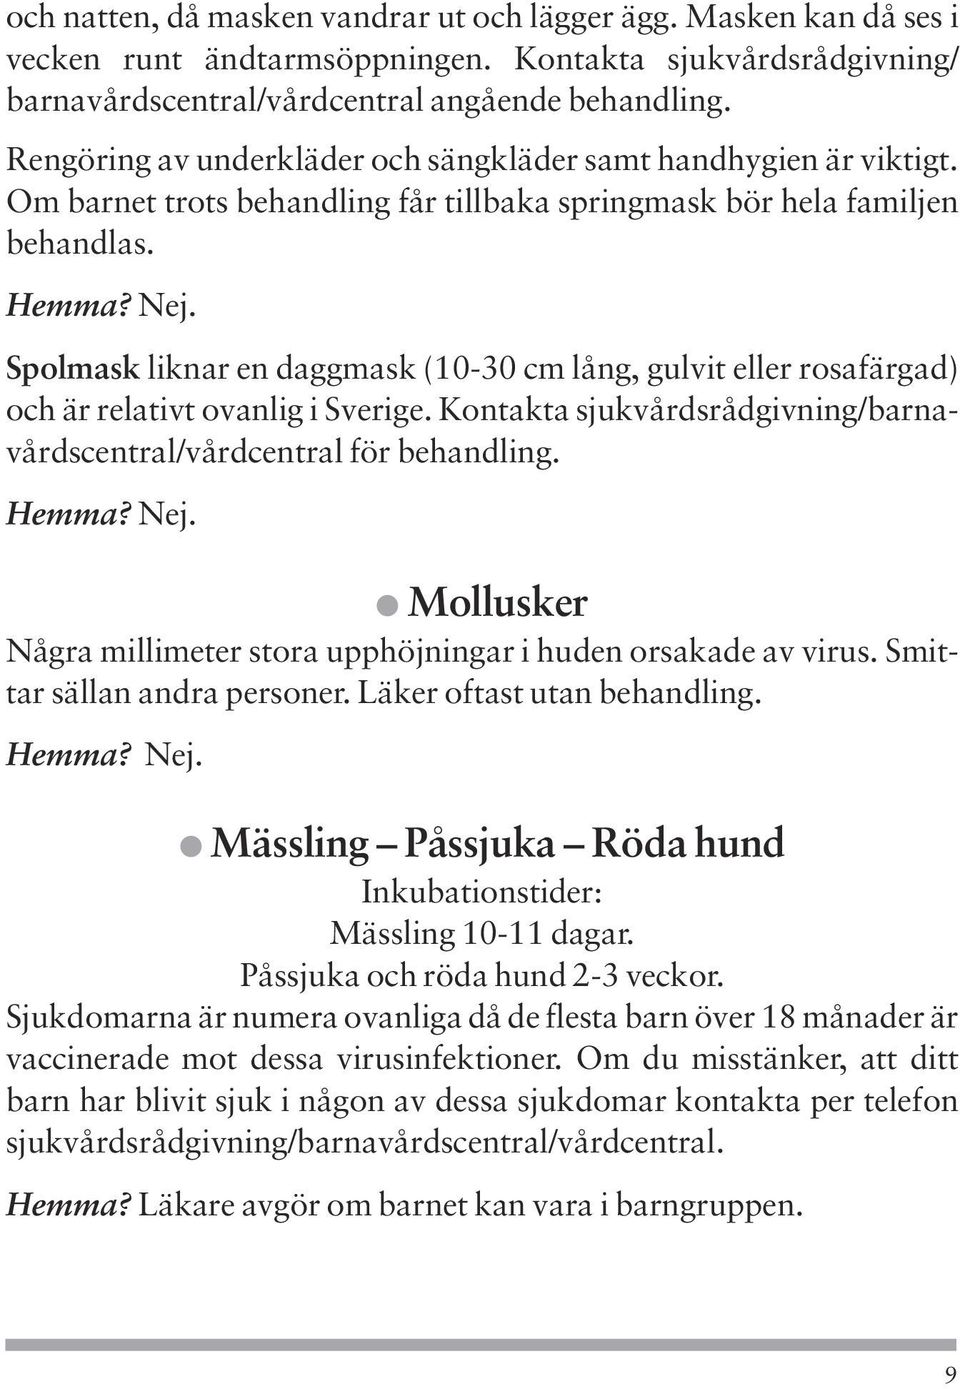 Spolmask liknar en daggmask (10-30 cm lång, gulvit eller rosafärgad) och är relativt ovanlig i Sverige. Kontakta sjukvårdsrådgivning/barnavårdscentral/vårdcentral för behandling. Hemma? Nej.